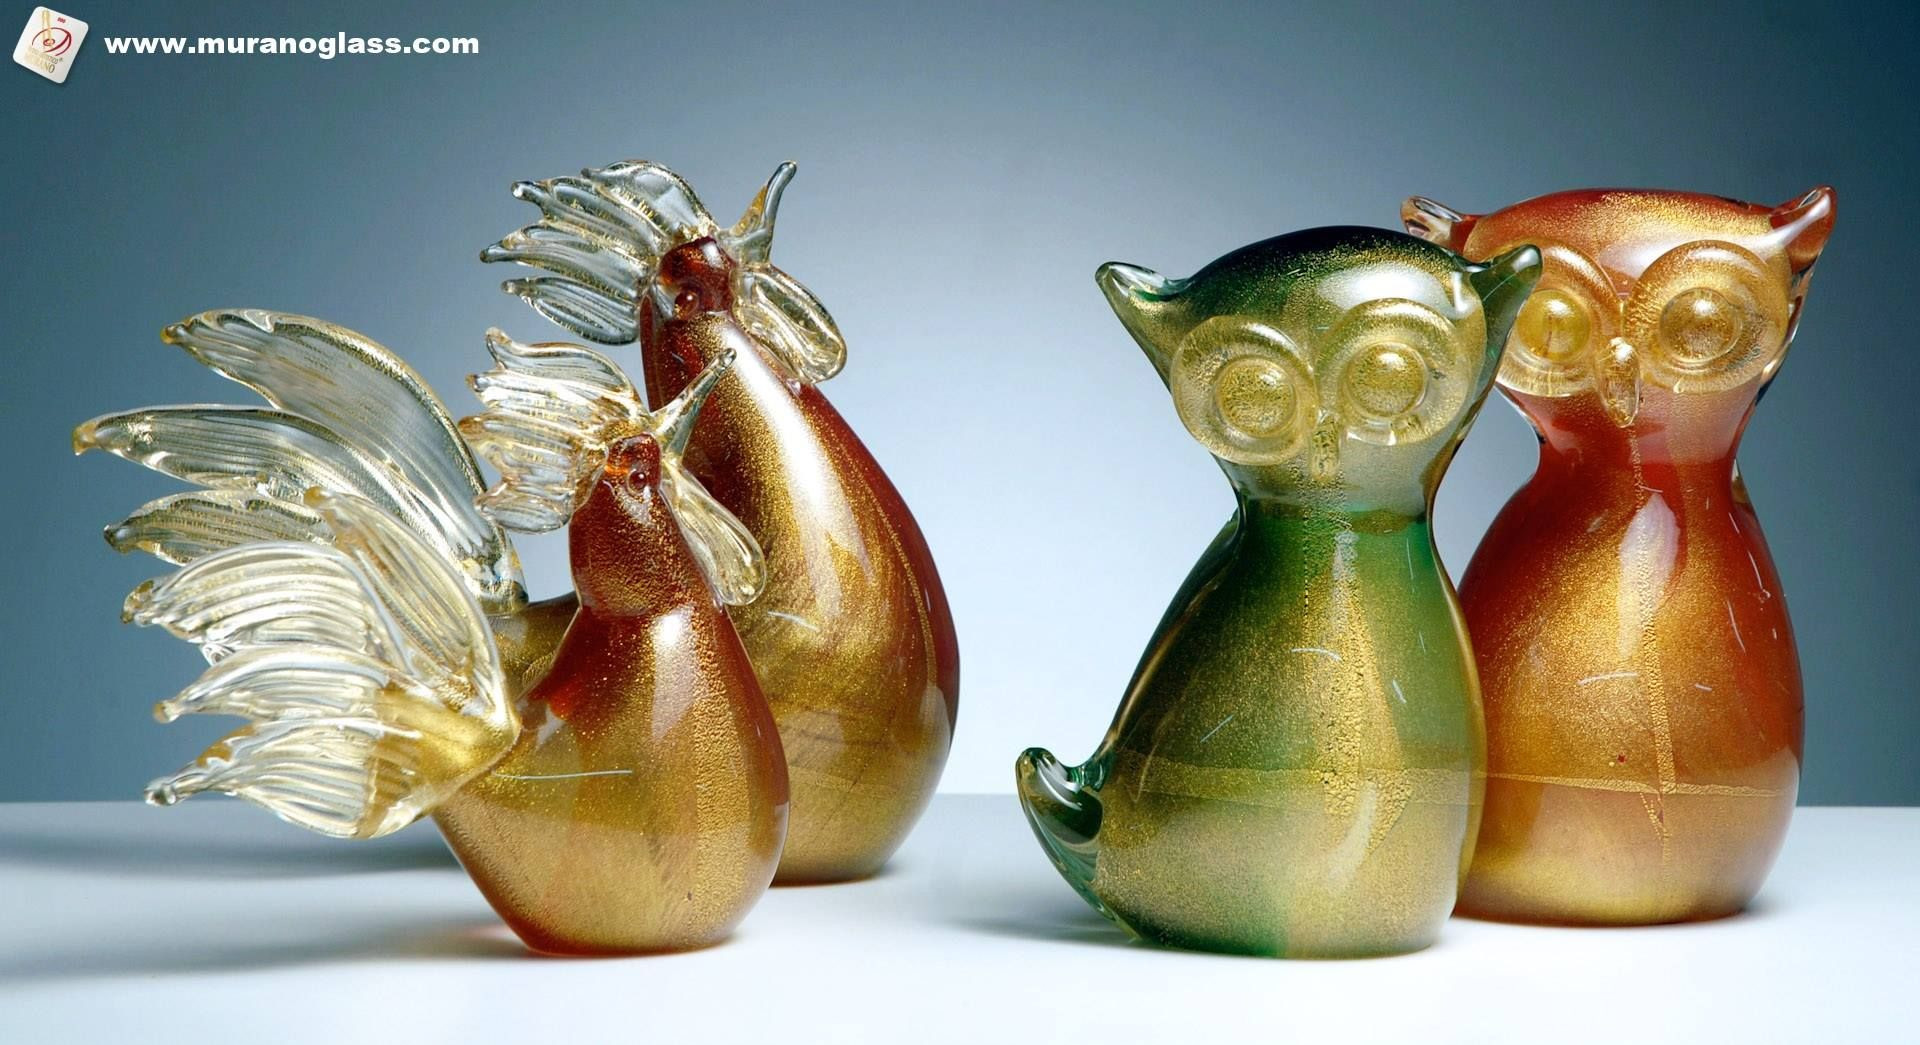 How to Identify Murano Glass Vase Of Szukaj Znaku Jakoaci Vetro Artisticoa Murano Jako Gwarancji Pertaining to Szukaj Znaku Jakoaci Vetro Artisticoa Murano Jako Gwarancji Pochodzenia Przy Zakupie Szklanych Wyroba³w Na Wyspie